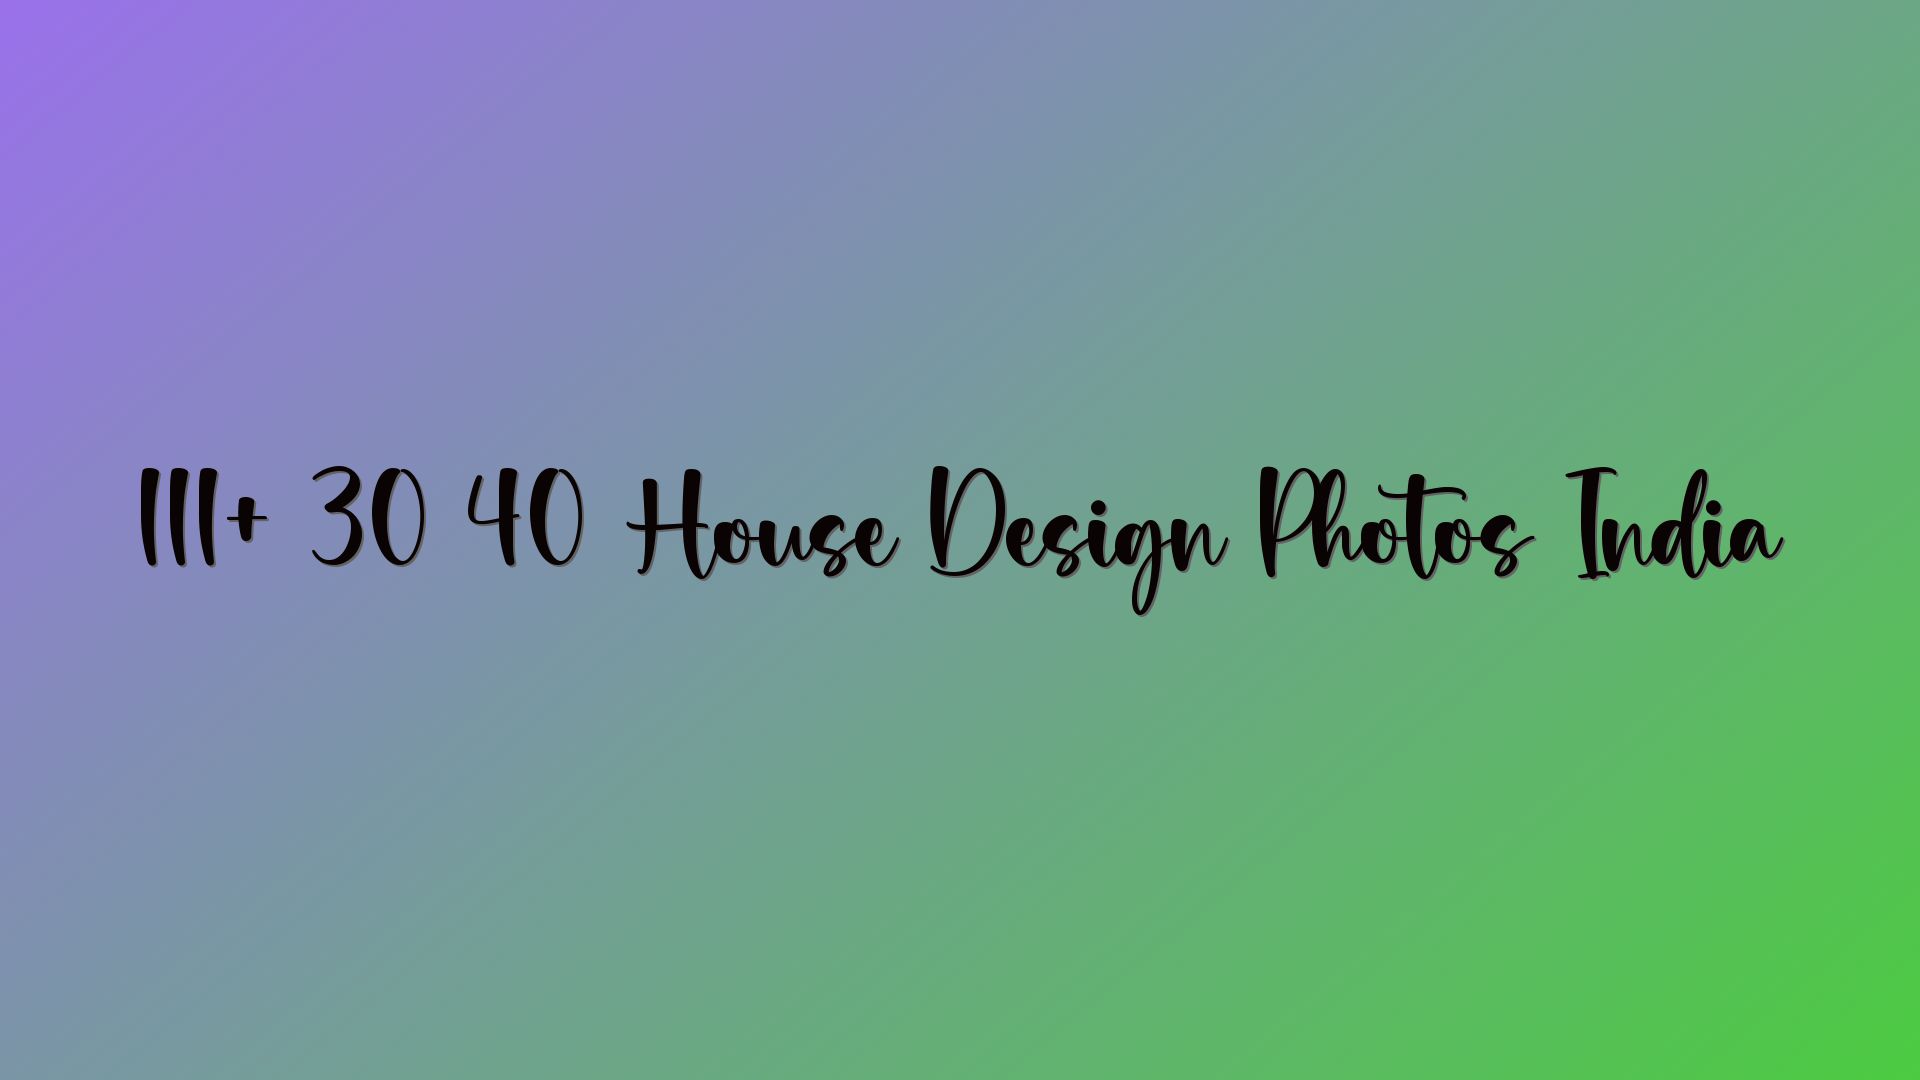 111+ 30 40 House Design Photos India